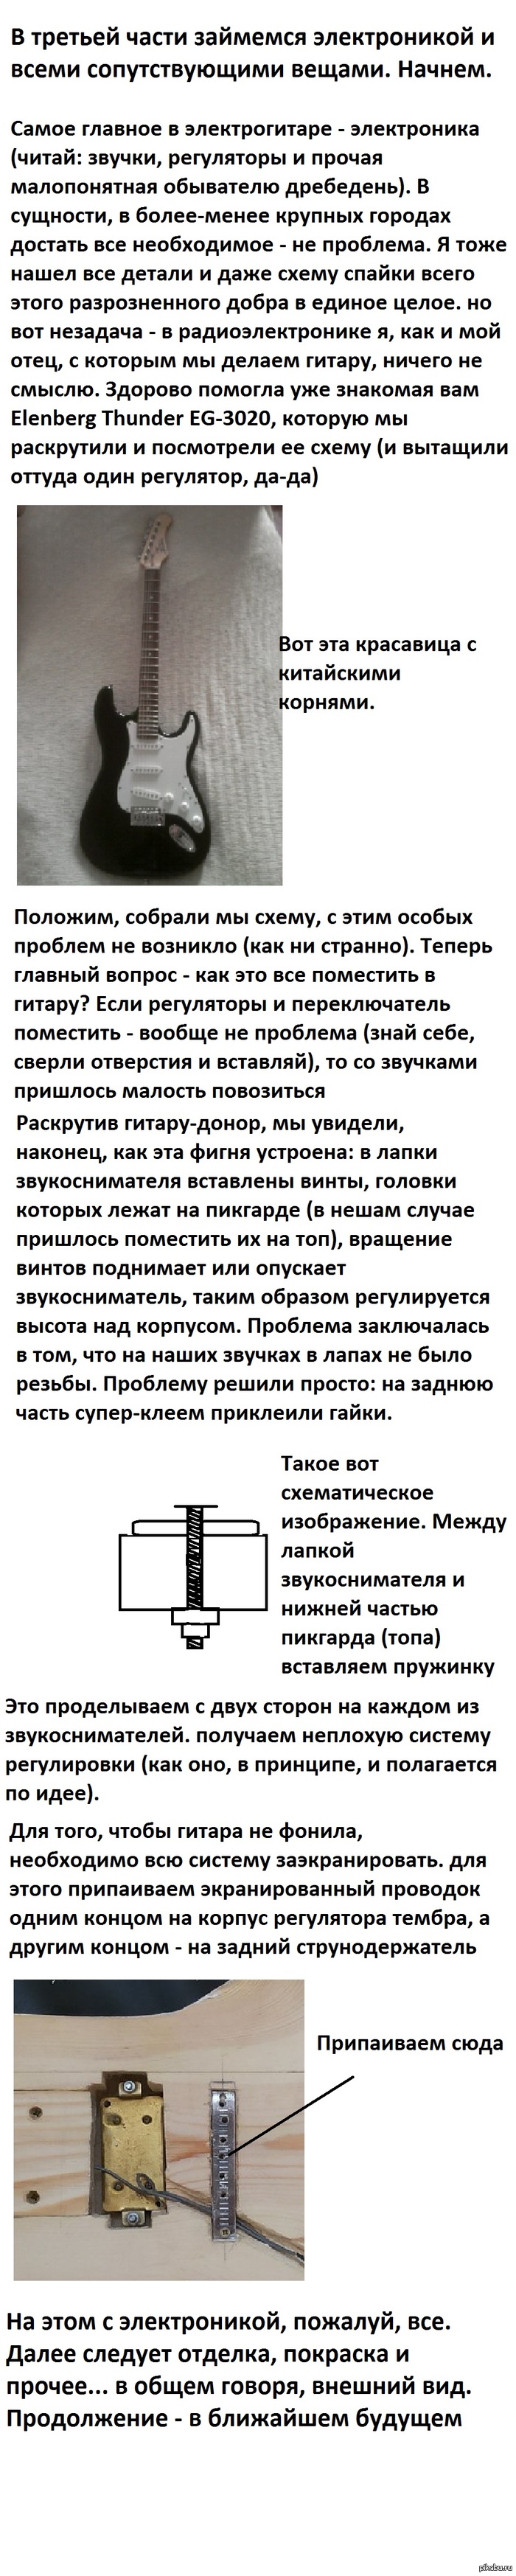 -.  .  .   : <a href="http://pikabu.ru/story/palkasamopalka_istoriya_stroitelstva_chast_2_1483152#comments">http://pikabu.ru/story/_1483152</a>